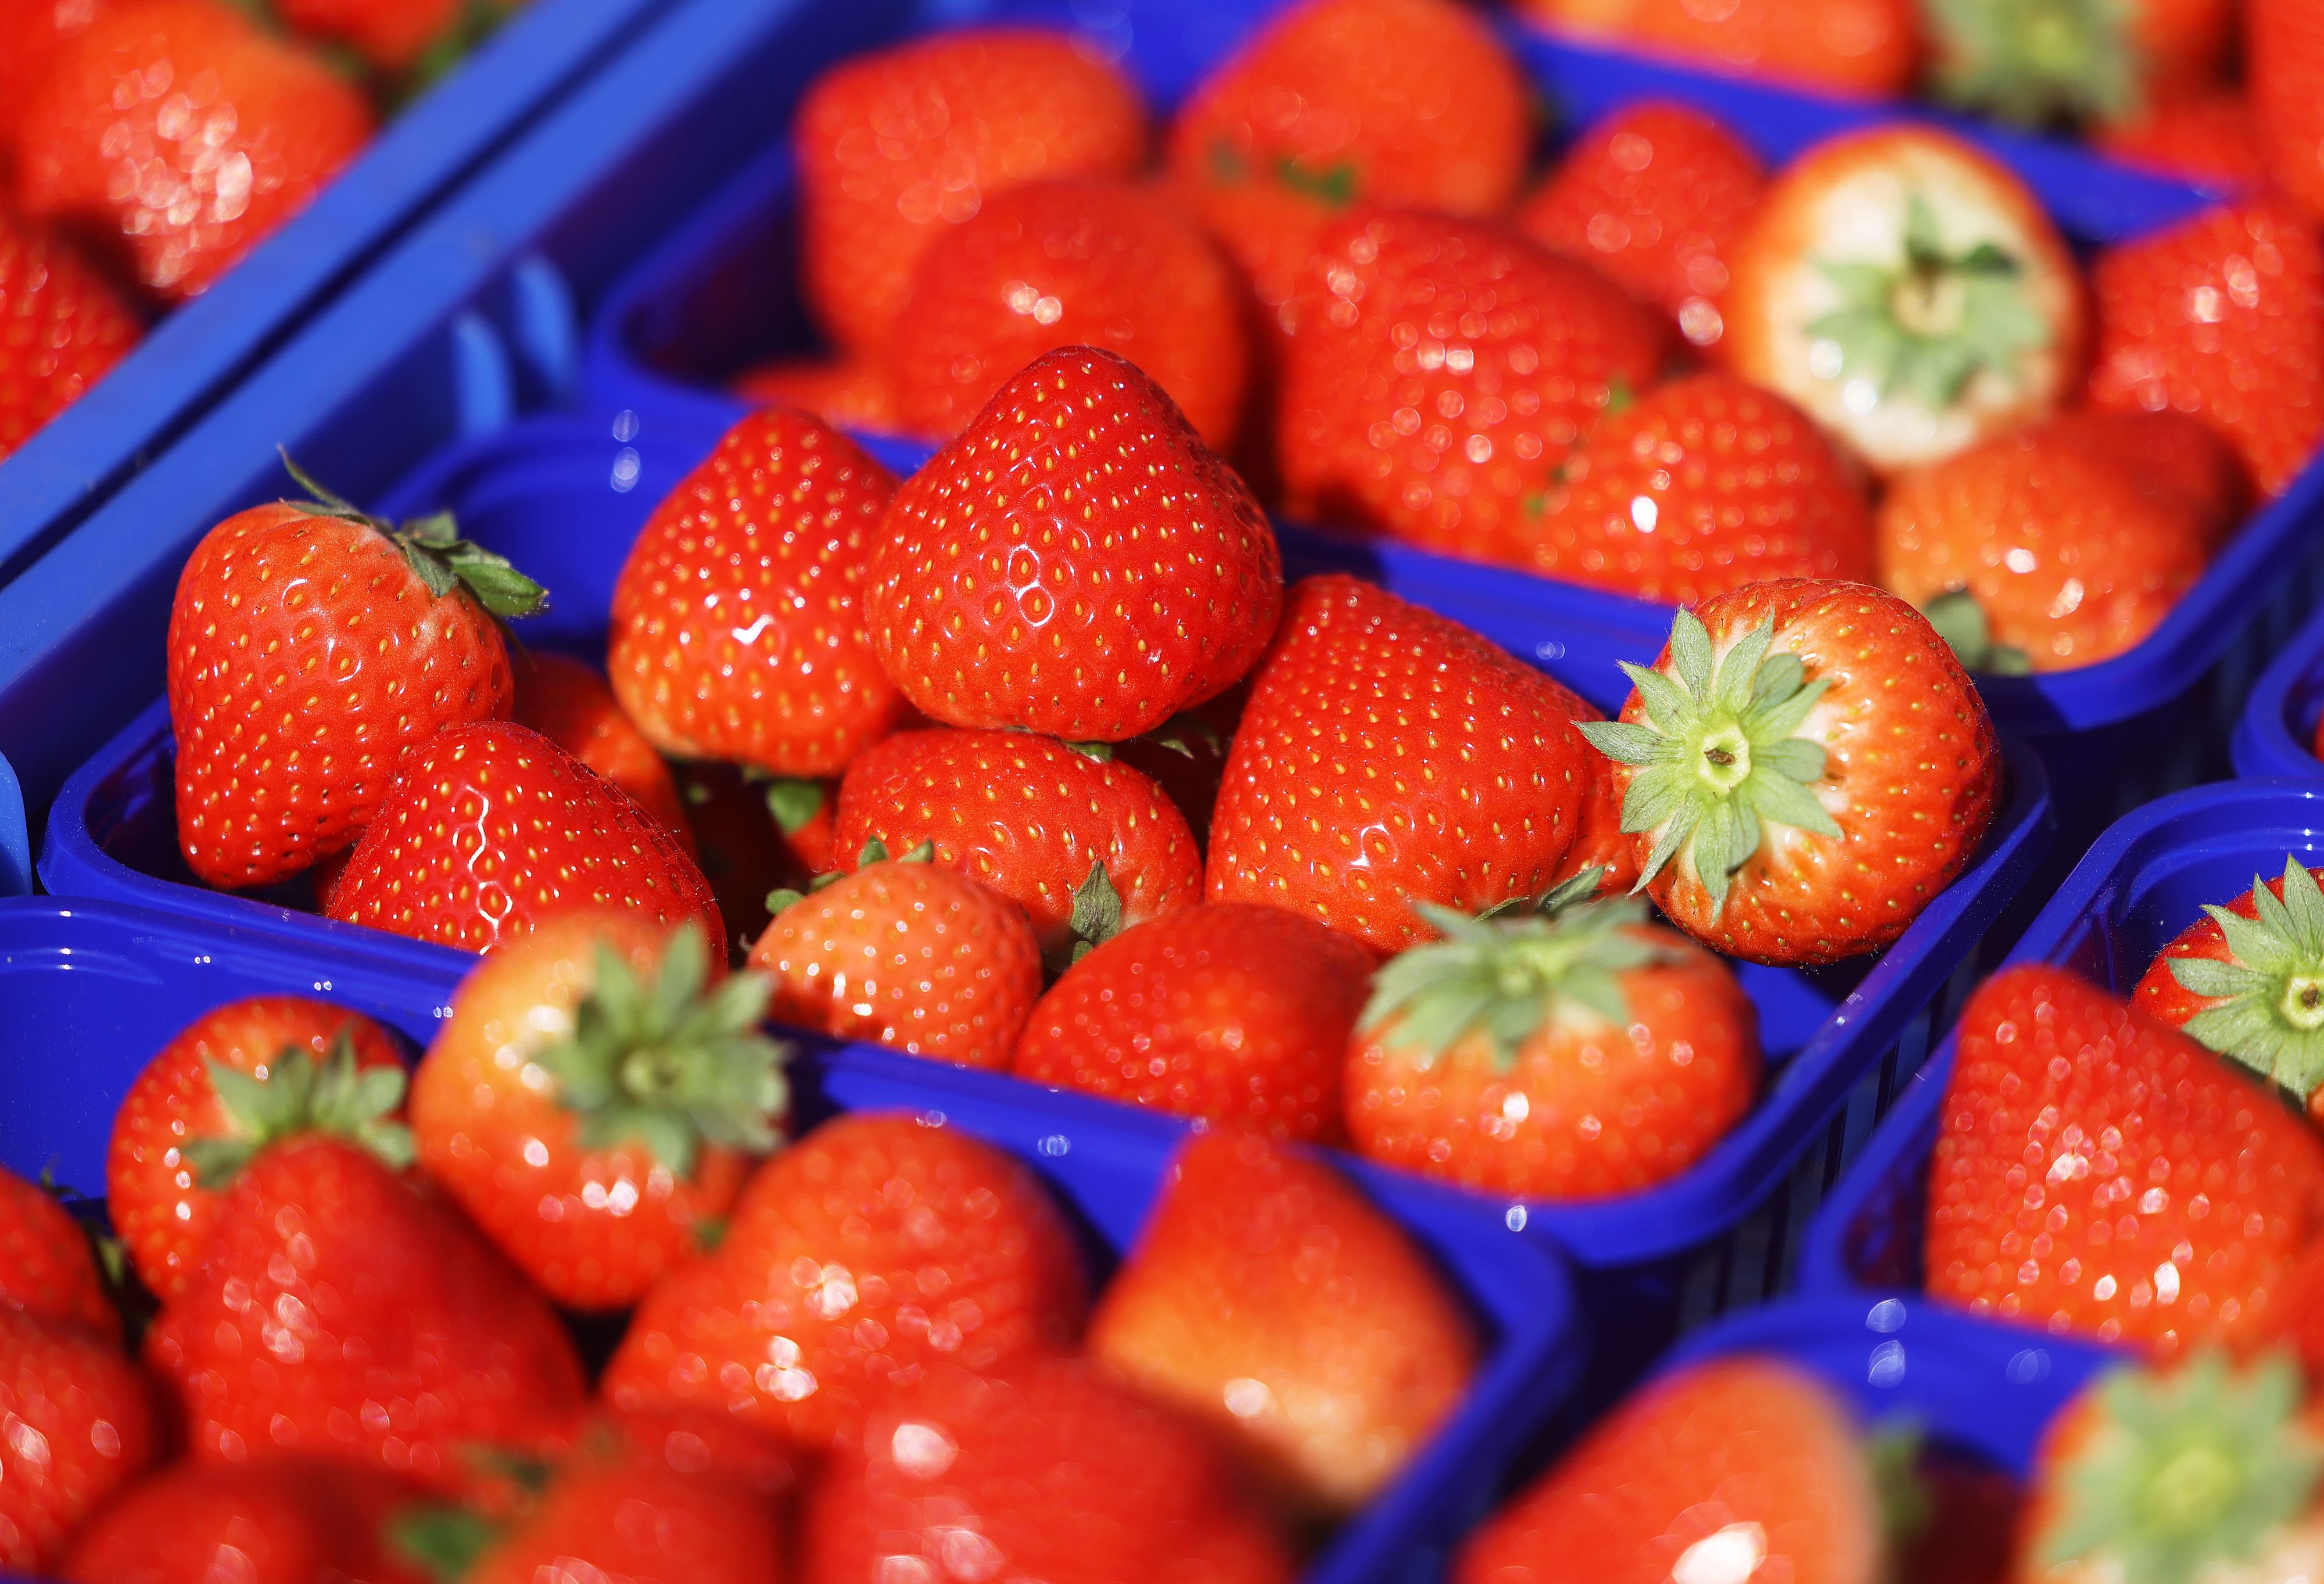 Fiese #strawberrybugs-Videos: Müssen Erdbeeren ab jetzt ins Salzwasser?